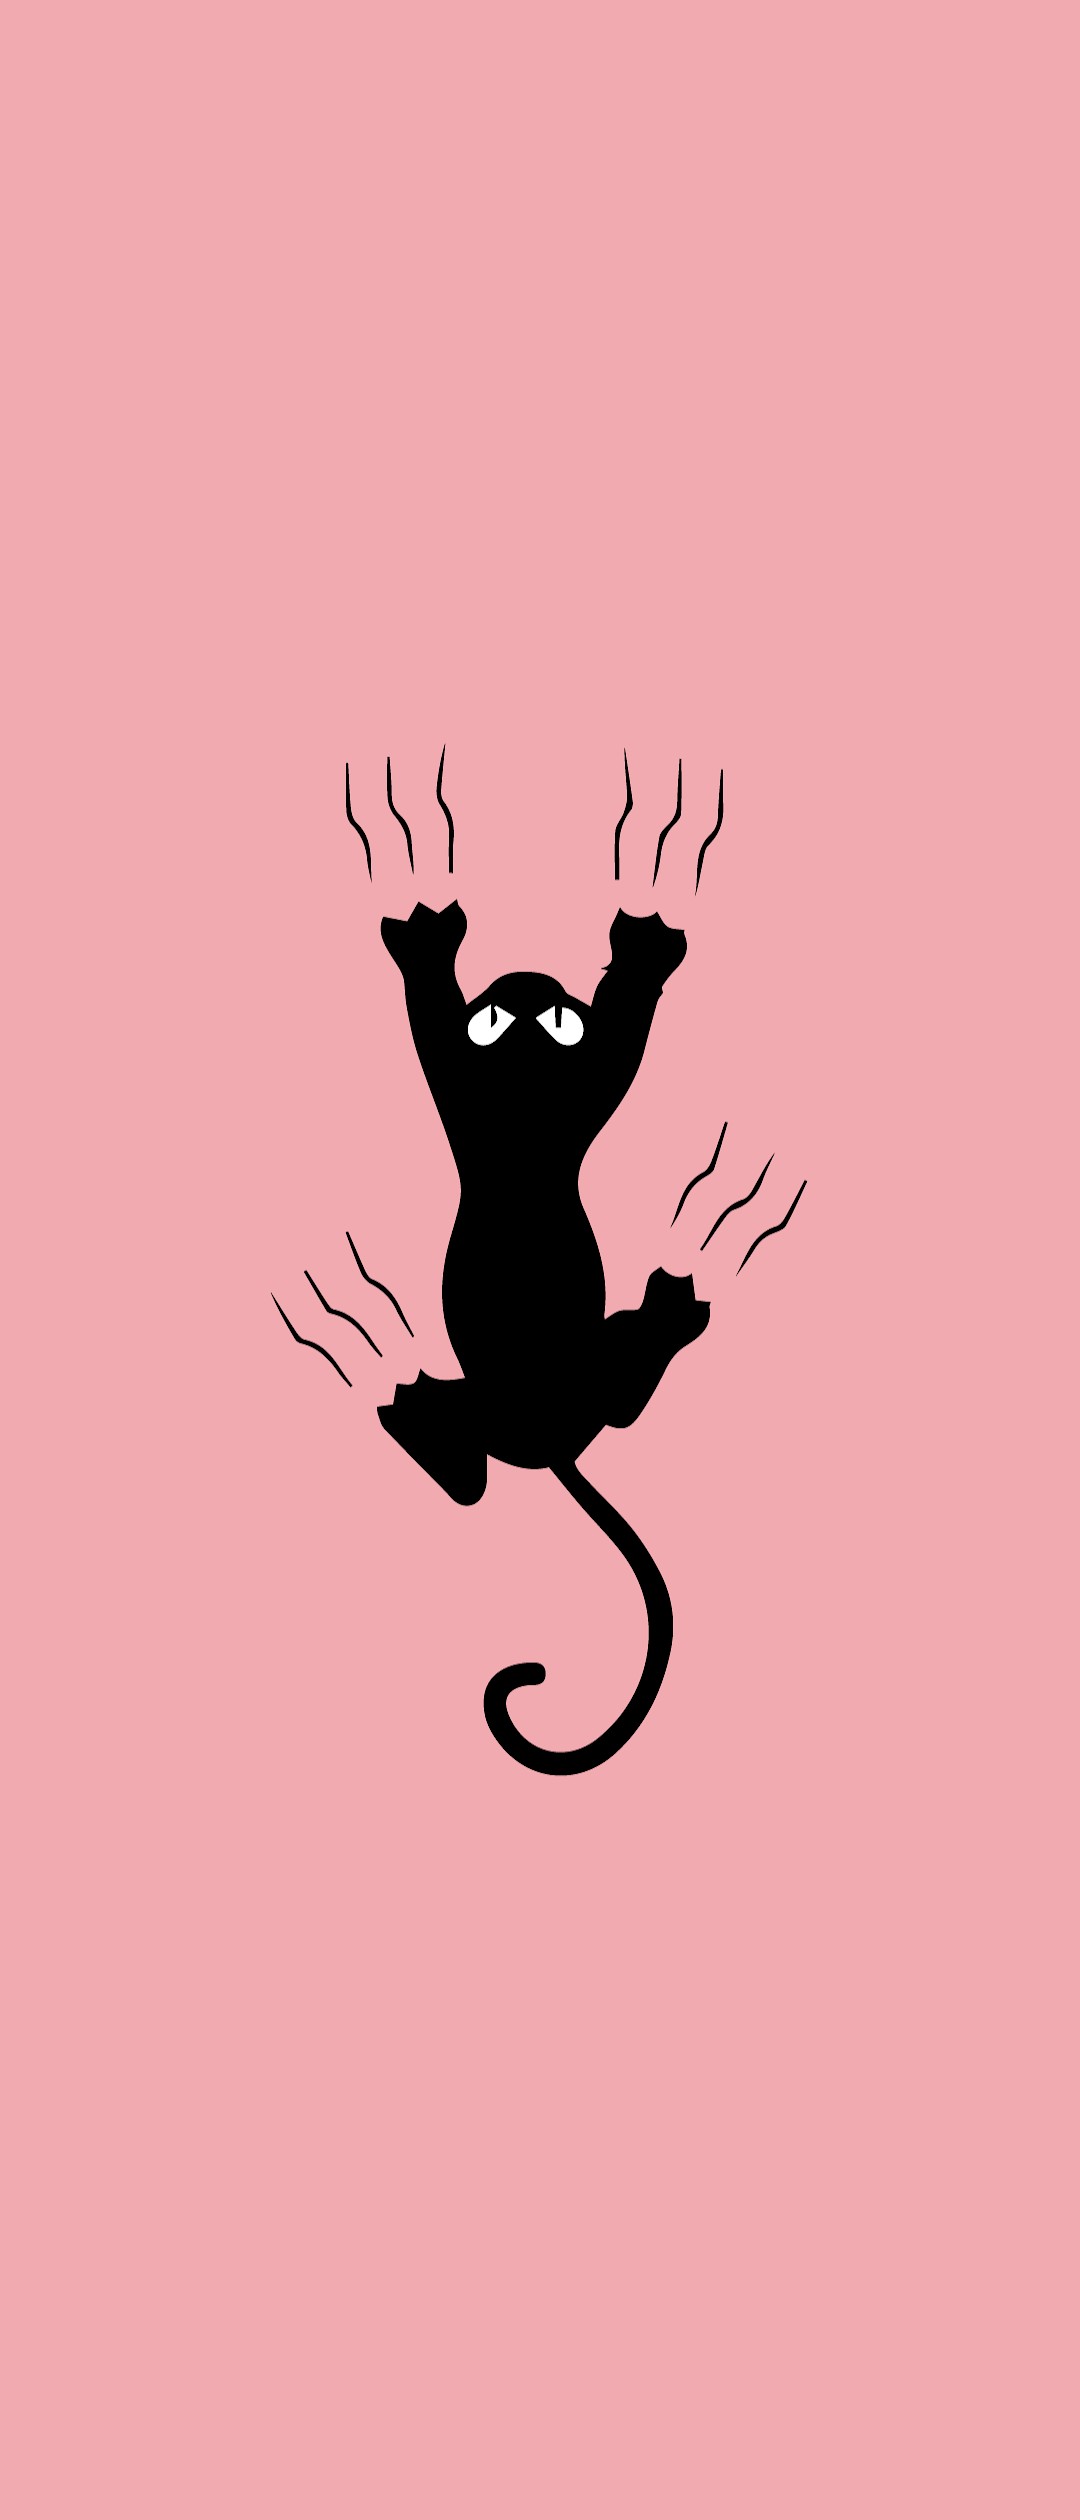 平凡 指導する 接続詞 黒 猫 壁紙 イラスト Yoshinokuzu Jp